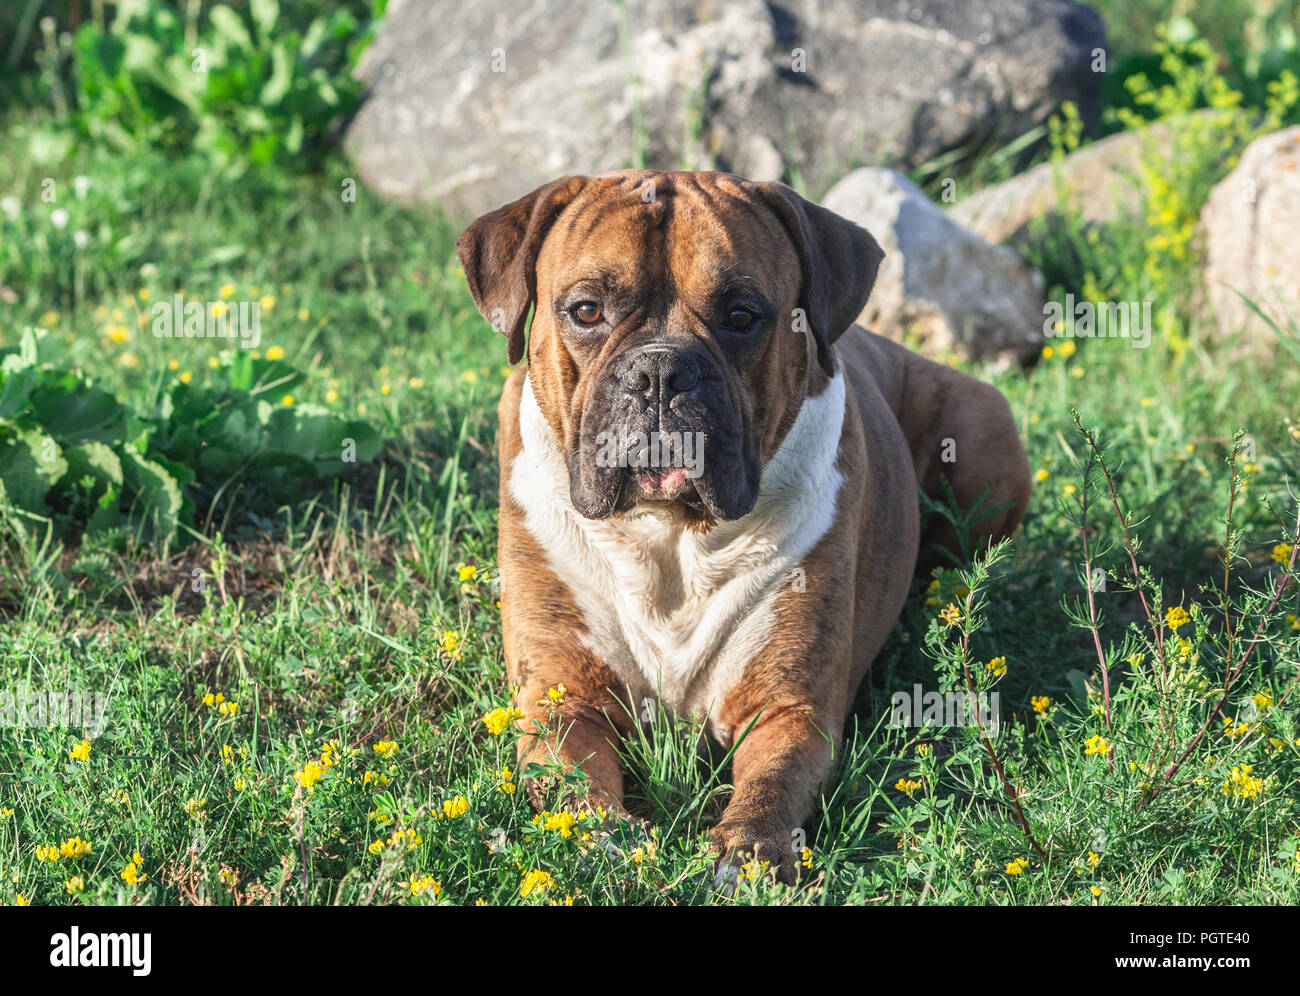 Il cane è un boxer tedesche marrone con strisce, giace sull'erba, il sole illumina l'animale, guarda nella fotocamera, sullo sfondo grigio di grandi dimensioni Foto Stock